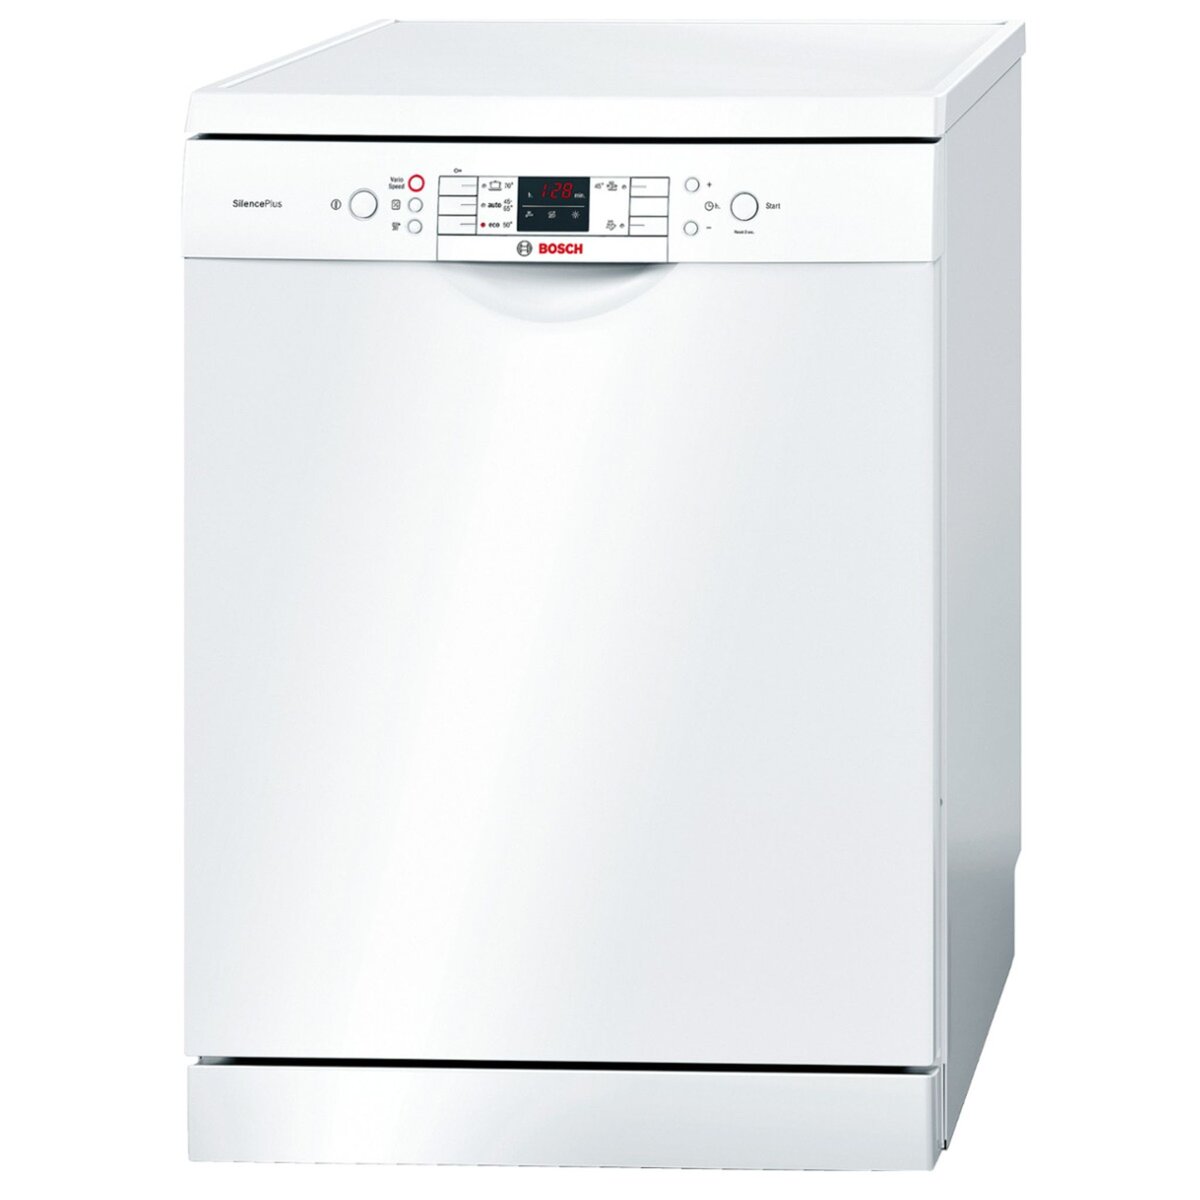 BOSCH Lave-vaisselle pose libre SMS54M52EU, 13 Couverts, 60 cm, 46 dB, 5 Programmes